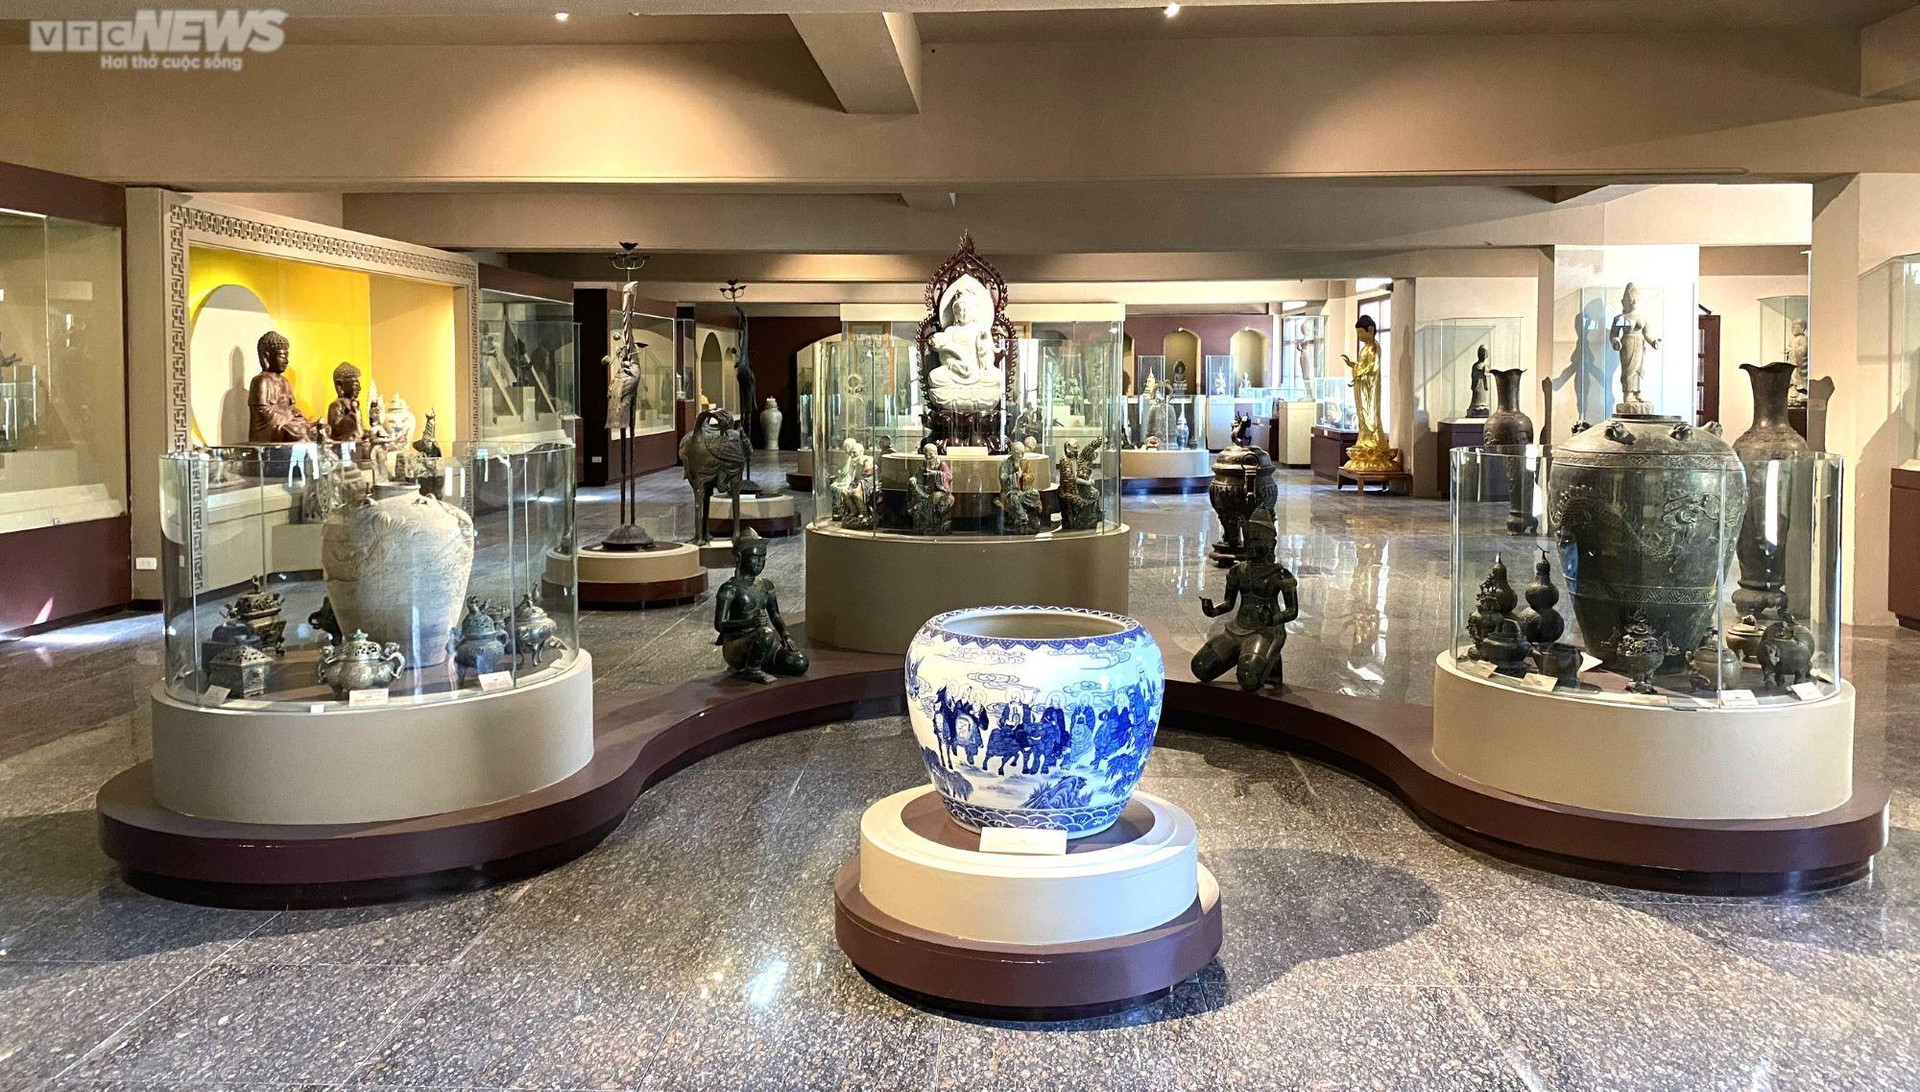 Chính thức mở cửa đón khách tham quan từ năm 2016, Bảo tàng Văn hóa Phật giáo hiện trưng bày hơn 500 cổ vật về Phật giáo. Các cổ vật phản ánh nghệ thuật Phật giáo Việt Nam và một số quốc gia Châu Á được các trụ trì chùa Quán Thế Âm dày công sưu tầm trong hơn 20 năm qua. Nhiều hiện vật có niên đại trong vài ba thập kỷ gần đây, nhưng cũng có hiện vật có niên đại từ thế kỷ VII, VIII.